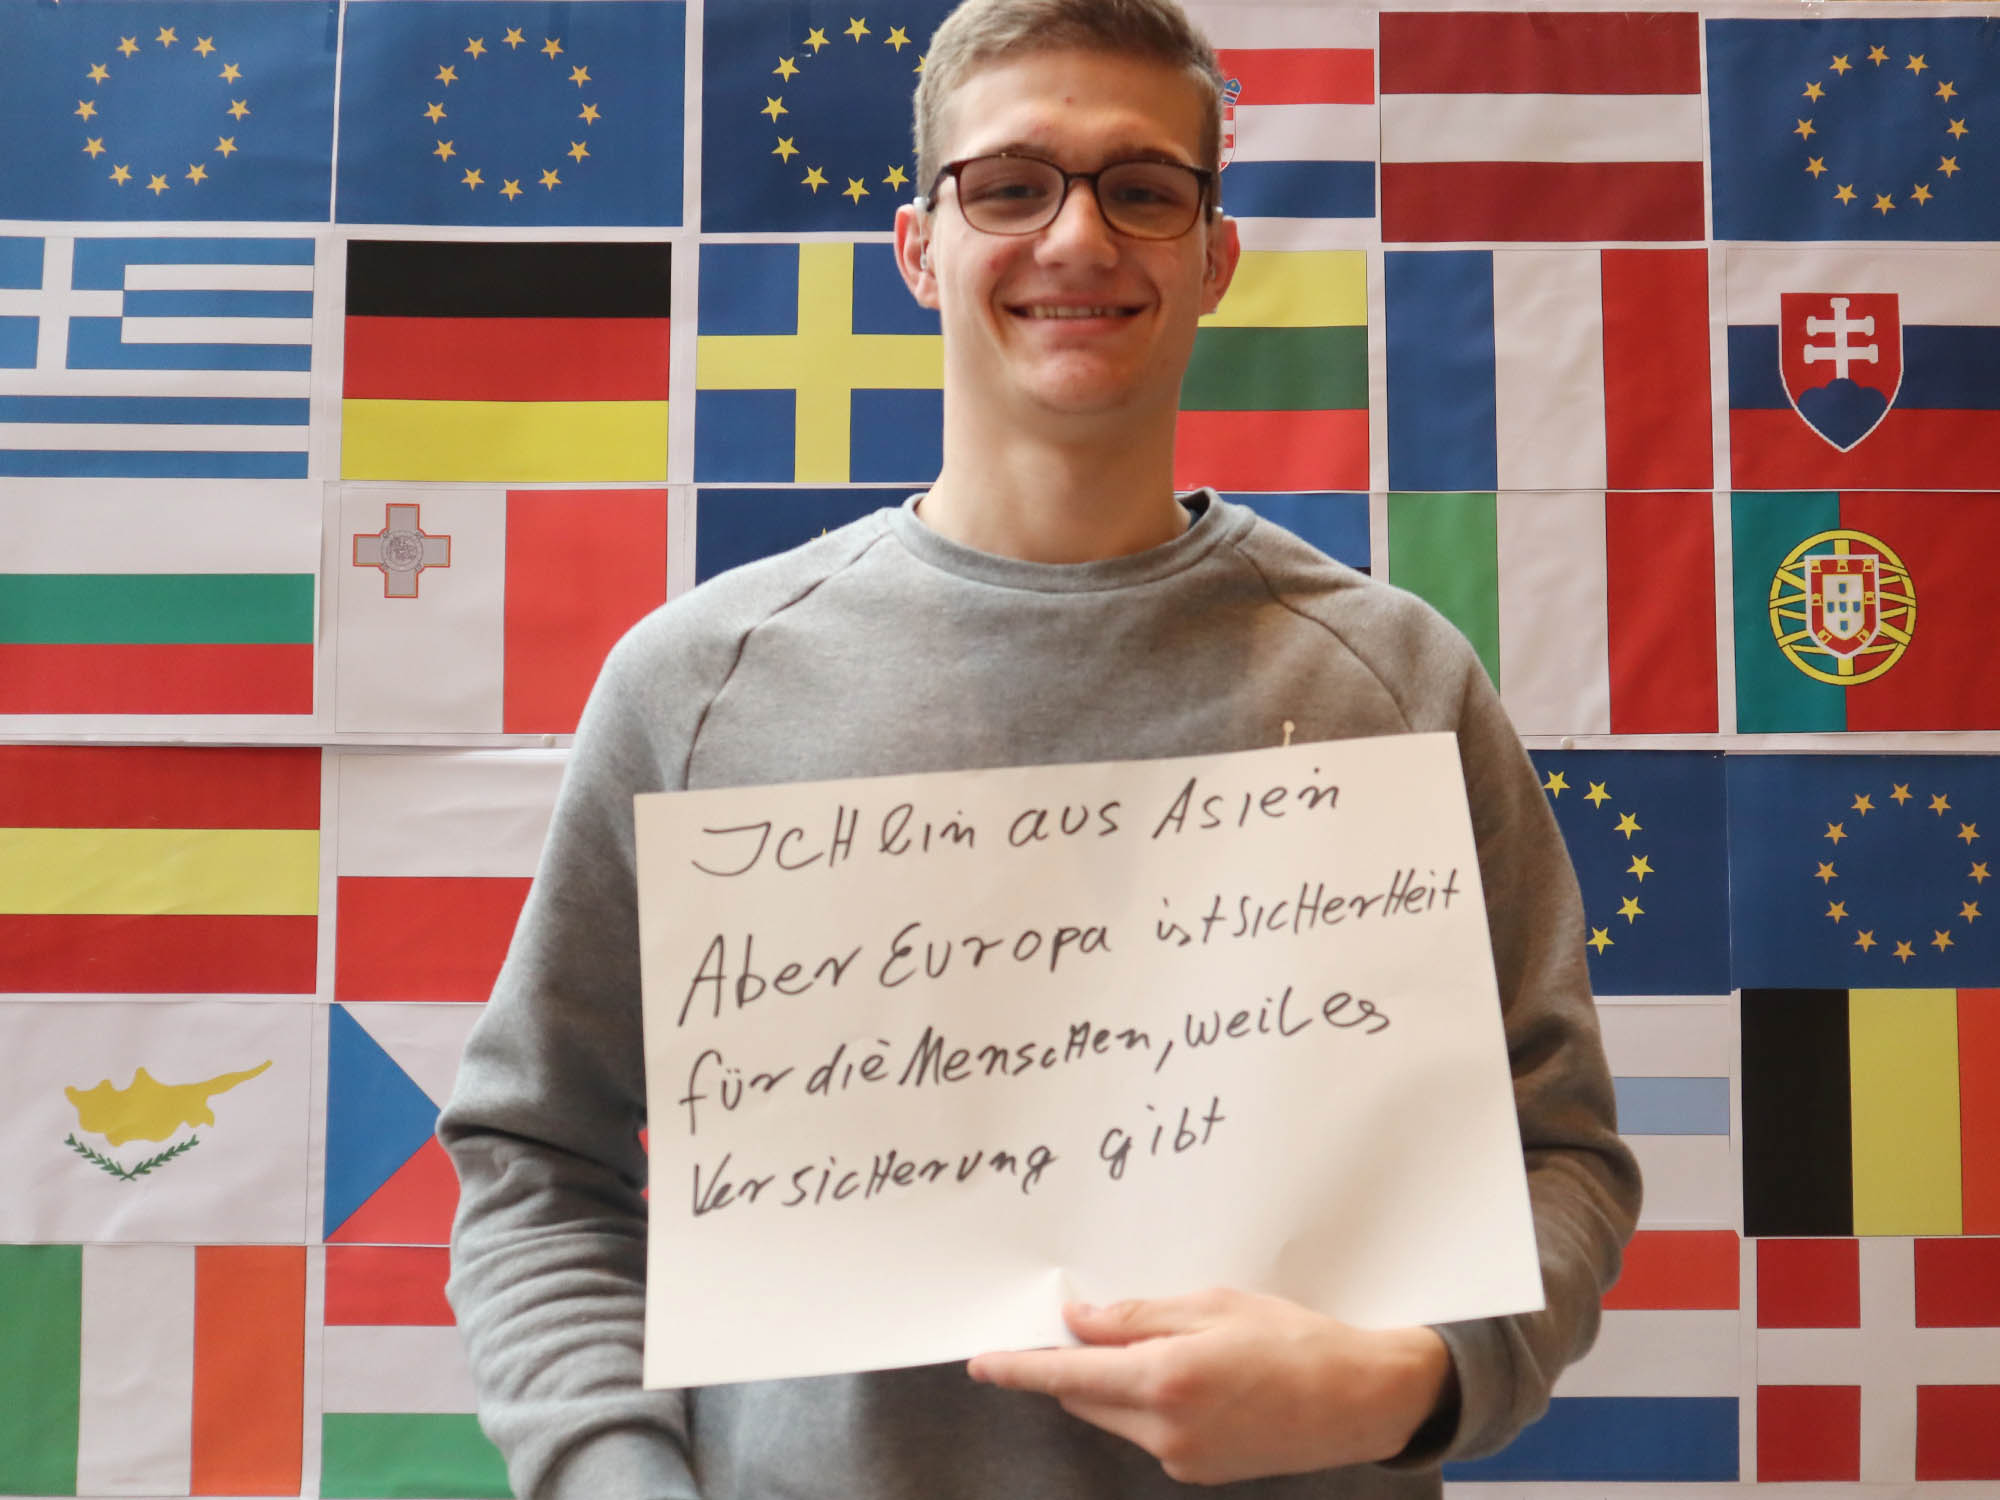 RWB Essen - RWB Europa Aktion - Fotoaktion "Ich bin Europa, weil..."